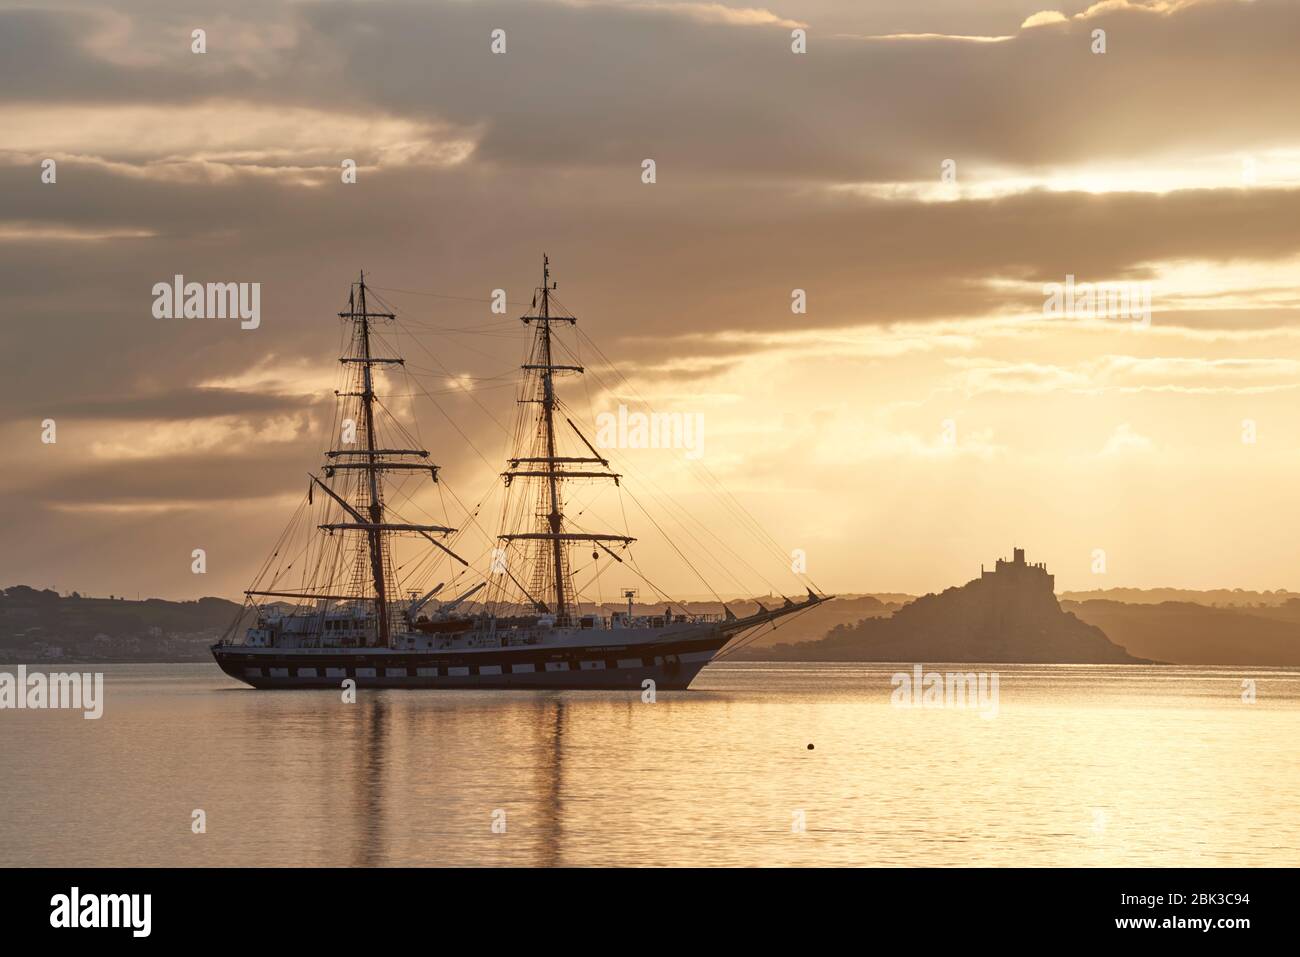 Un grand navire ancré dans Mounts Bay Cornwall au calme encore matin avec le mont St Michael silhouetted de l'autre côté de la baie Banque D'Images